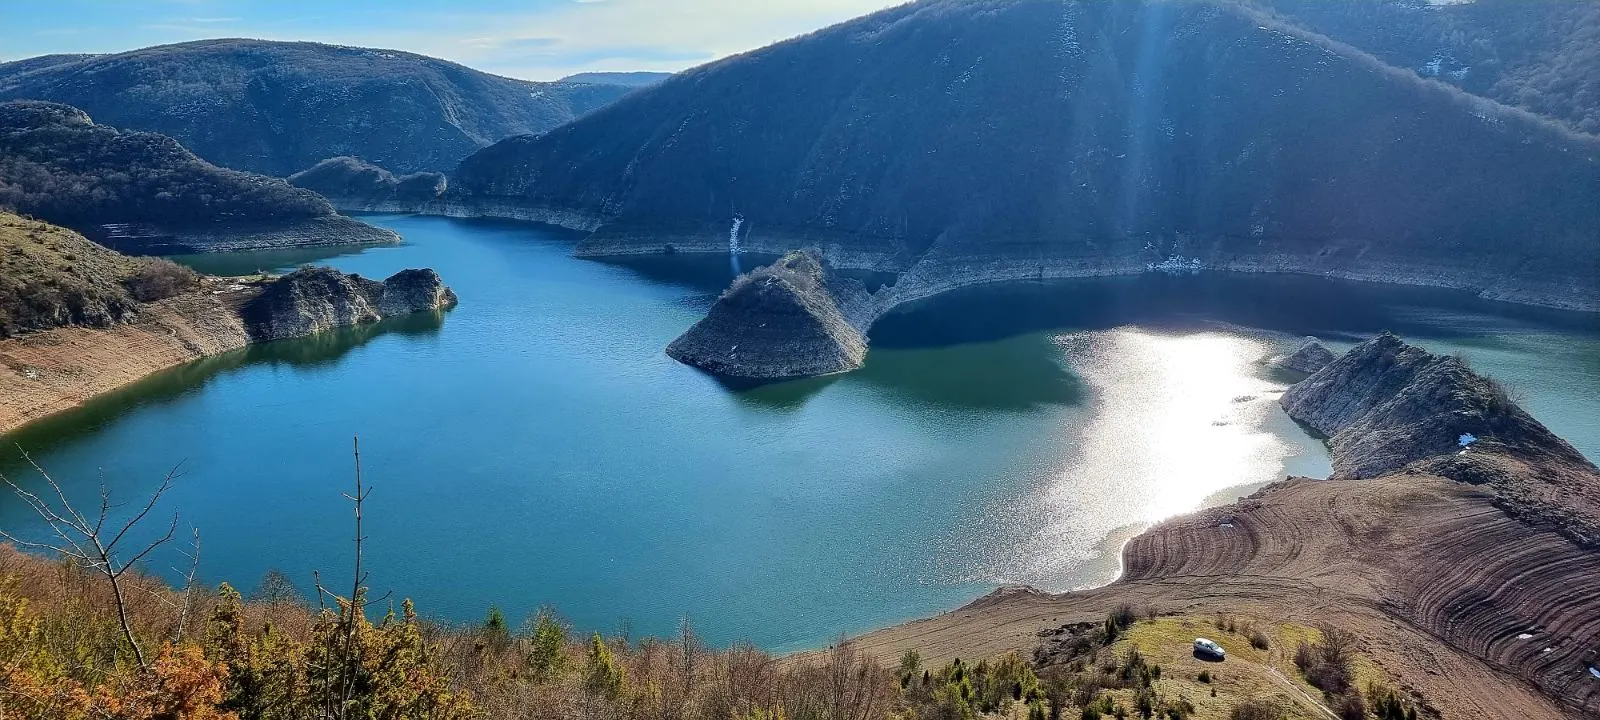 Kanjon reke uvac koja je poslednje stanoviste zasticene vrste beloglavog supa u Srbiji.